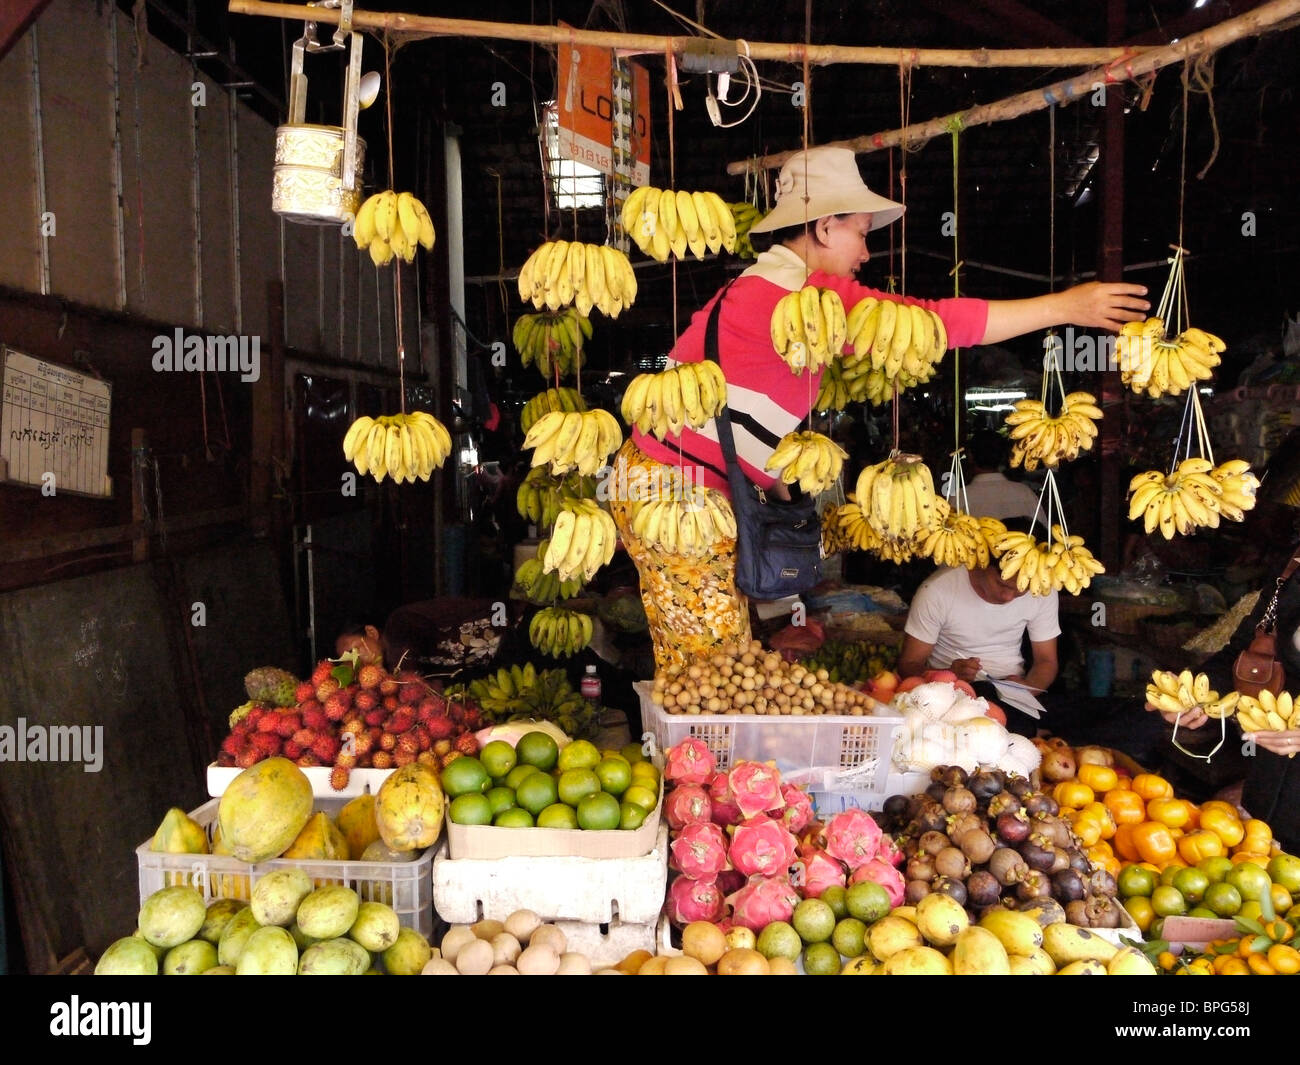 Frau am Marktstand Verkauf von Bananen und frischen Früchten, Phnom Phen Kambodscha Dezember 2009 Stockfoto